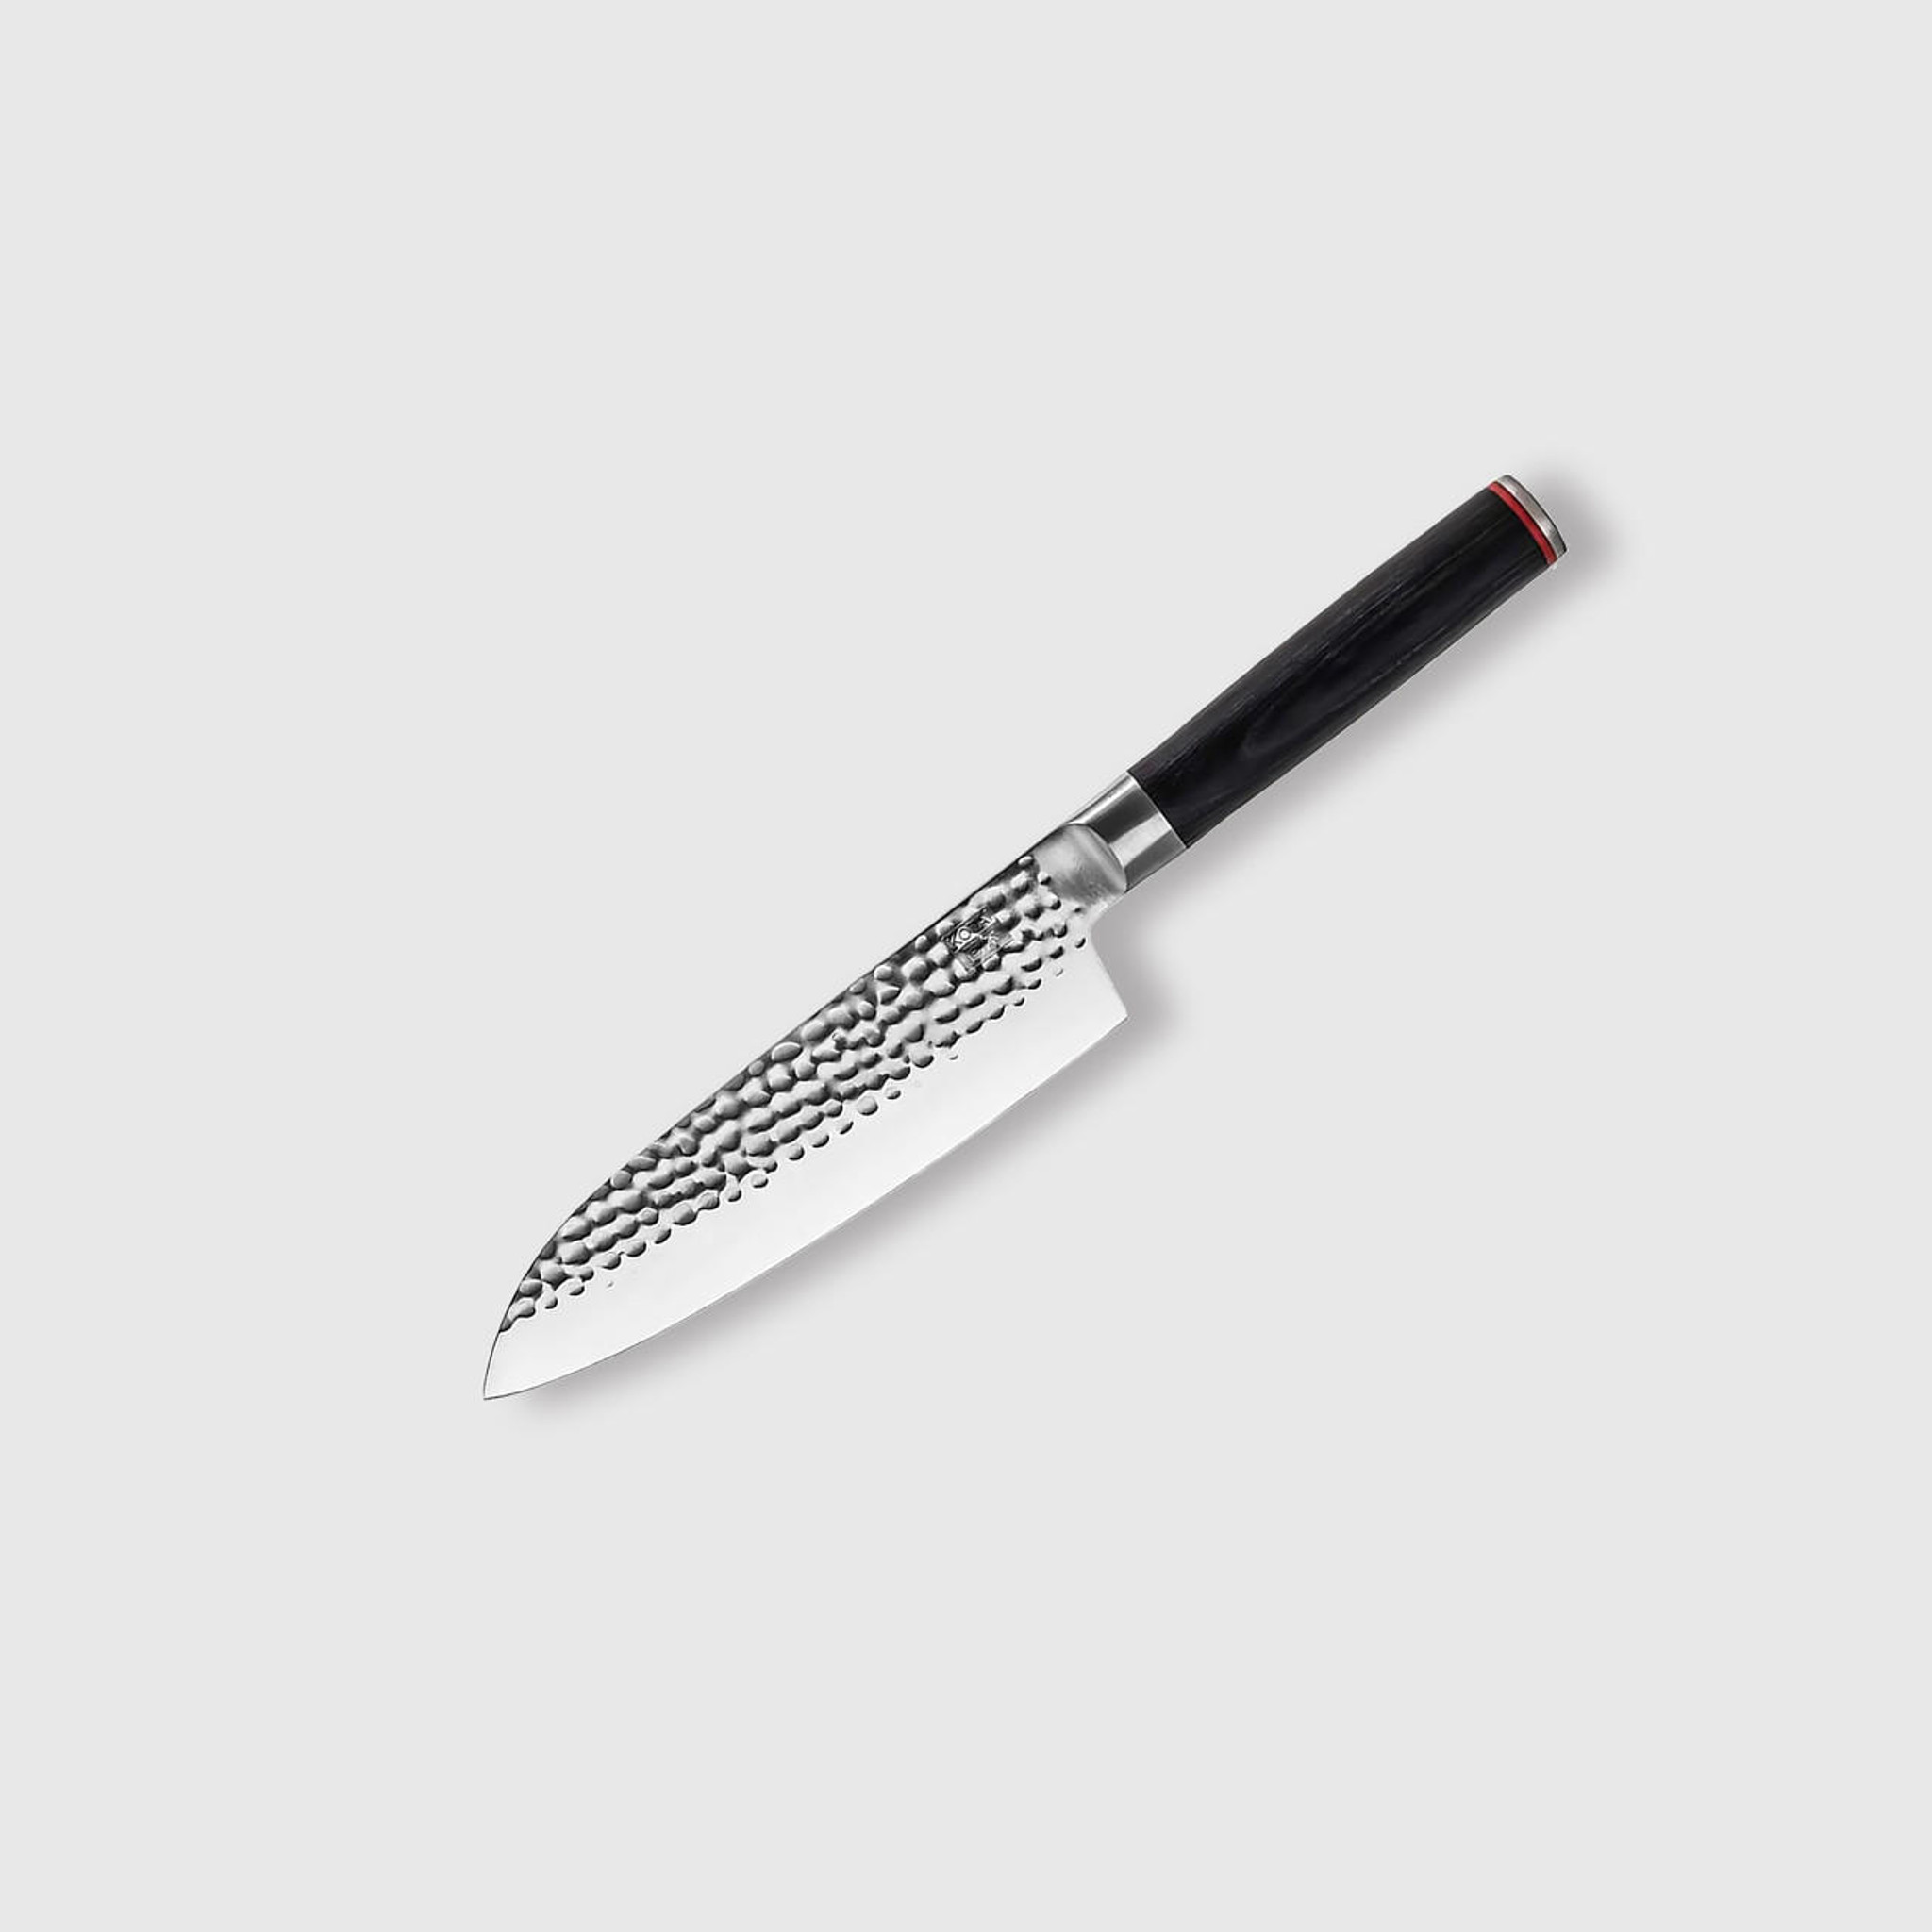 Kotai High Carbon Stainless Steel Pakka Santoku Knife, 7-in